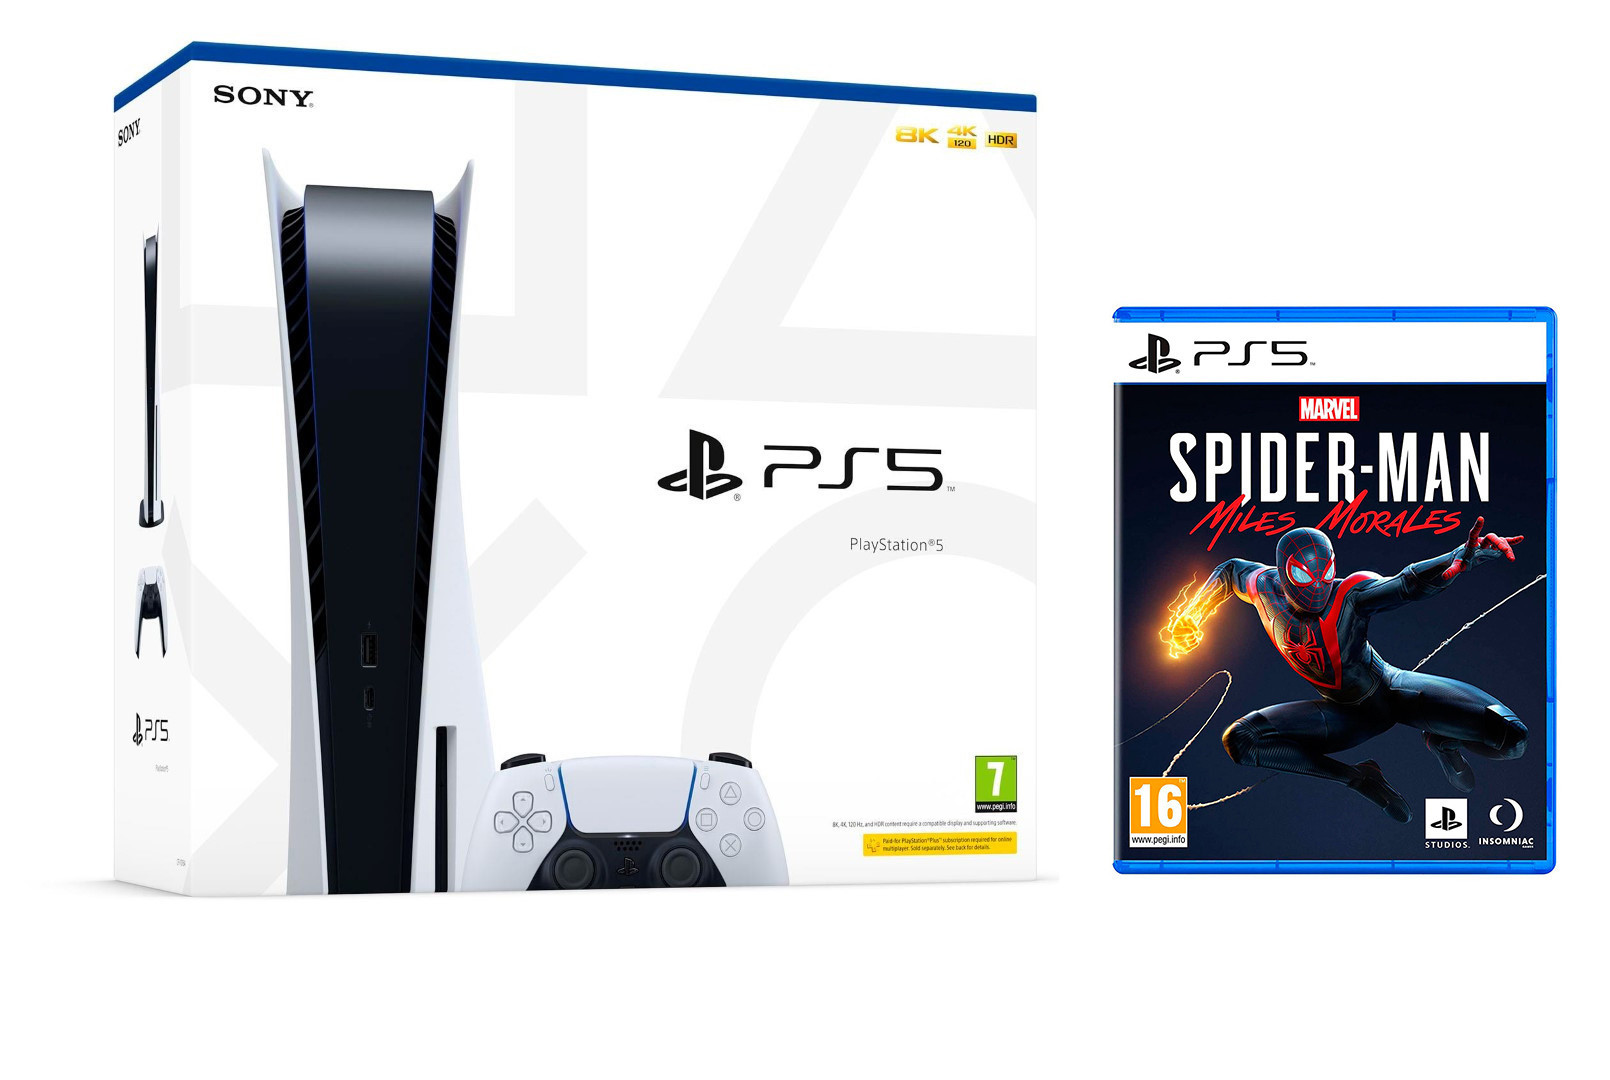 Consola Playstation 5 Estándar 825GB Blanco + Marvel Spider Man 2